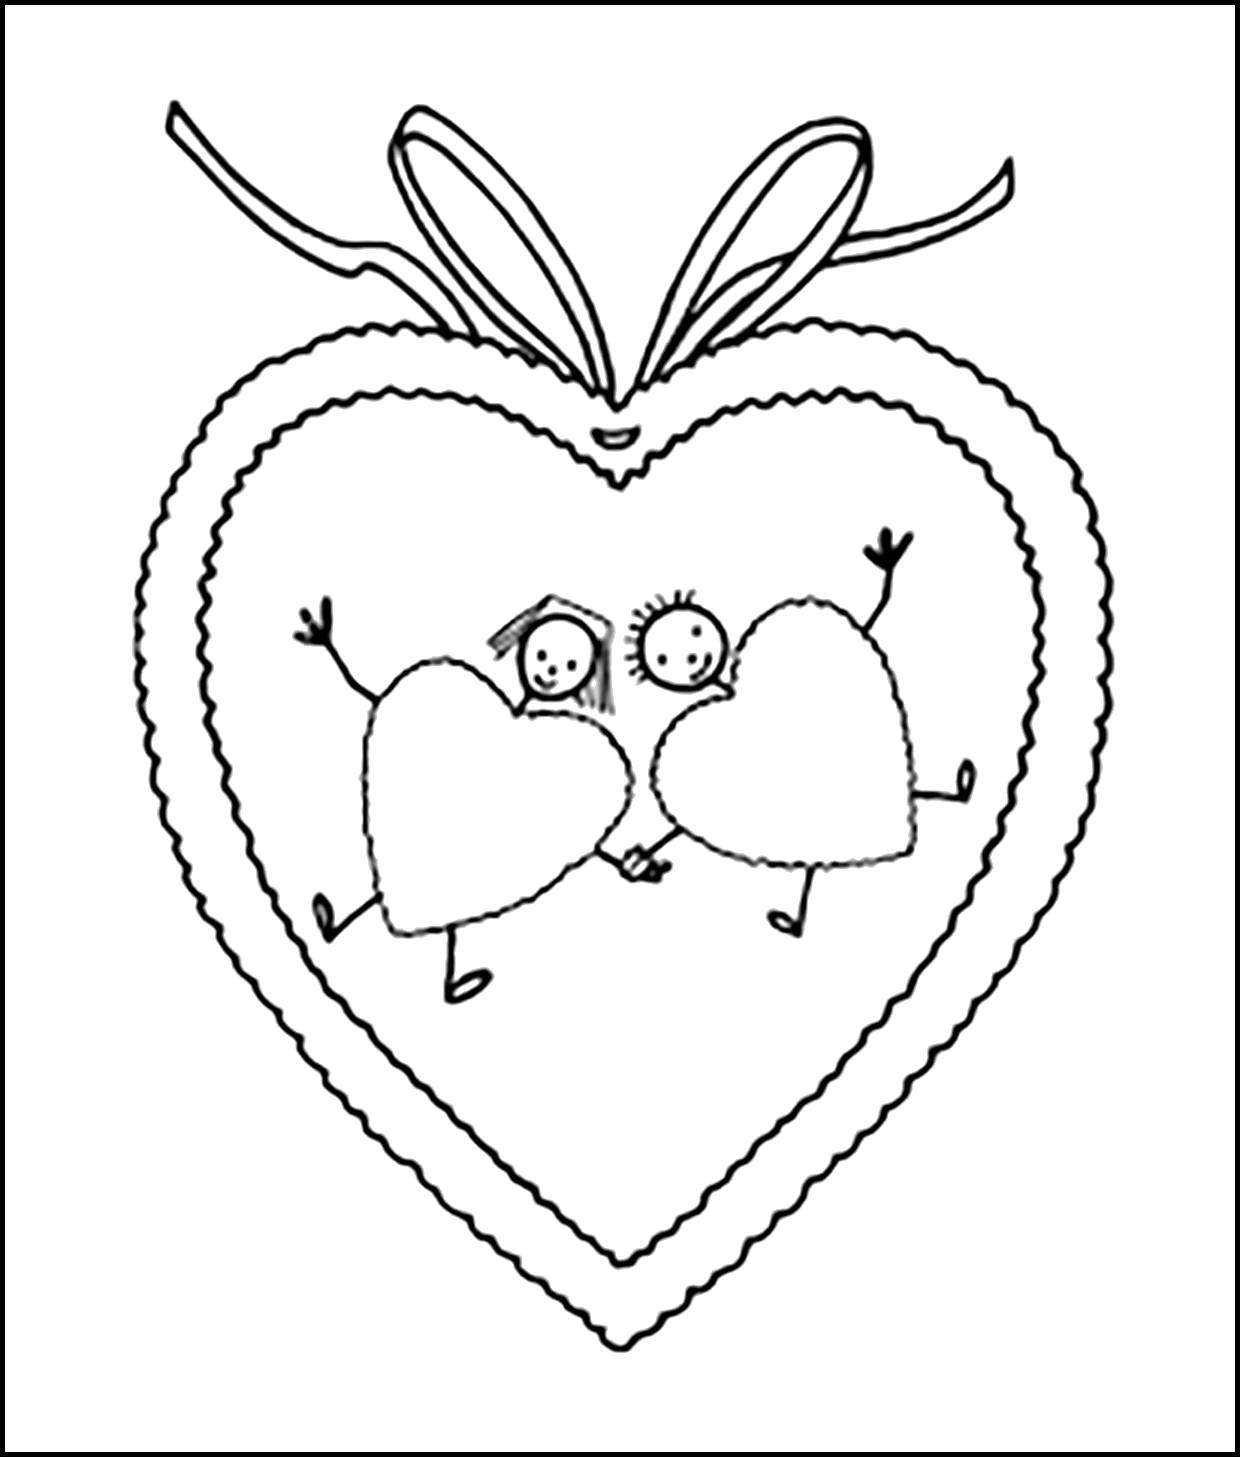 Название: Раскраска Раскраска влюбленные сердечки. Категория: День святого валентина. Теги: сердце.